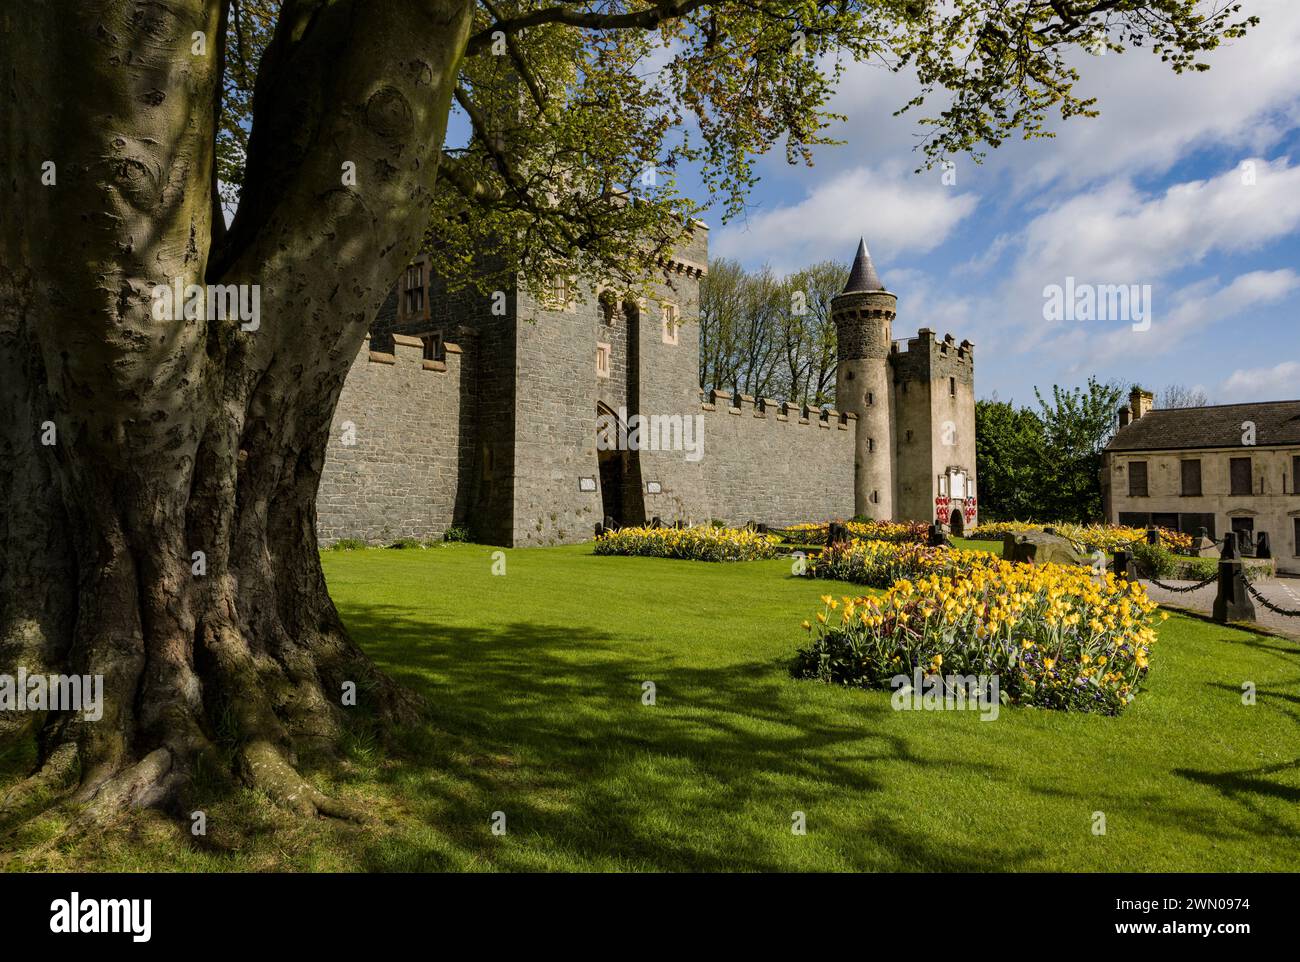 Si ritiene che il castello di Killyleagh, nella contea di Down, nell'Irlanda del Nord, sia il più antico castello abitato del paese, risalente al XII secolo. Foto Stock